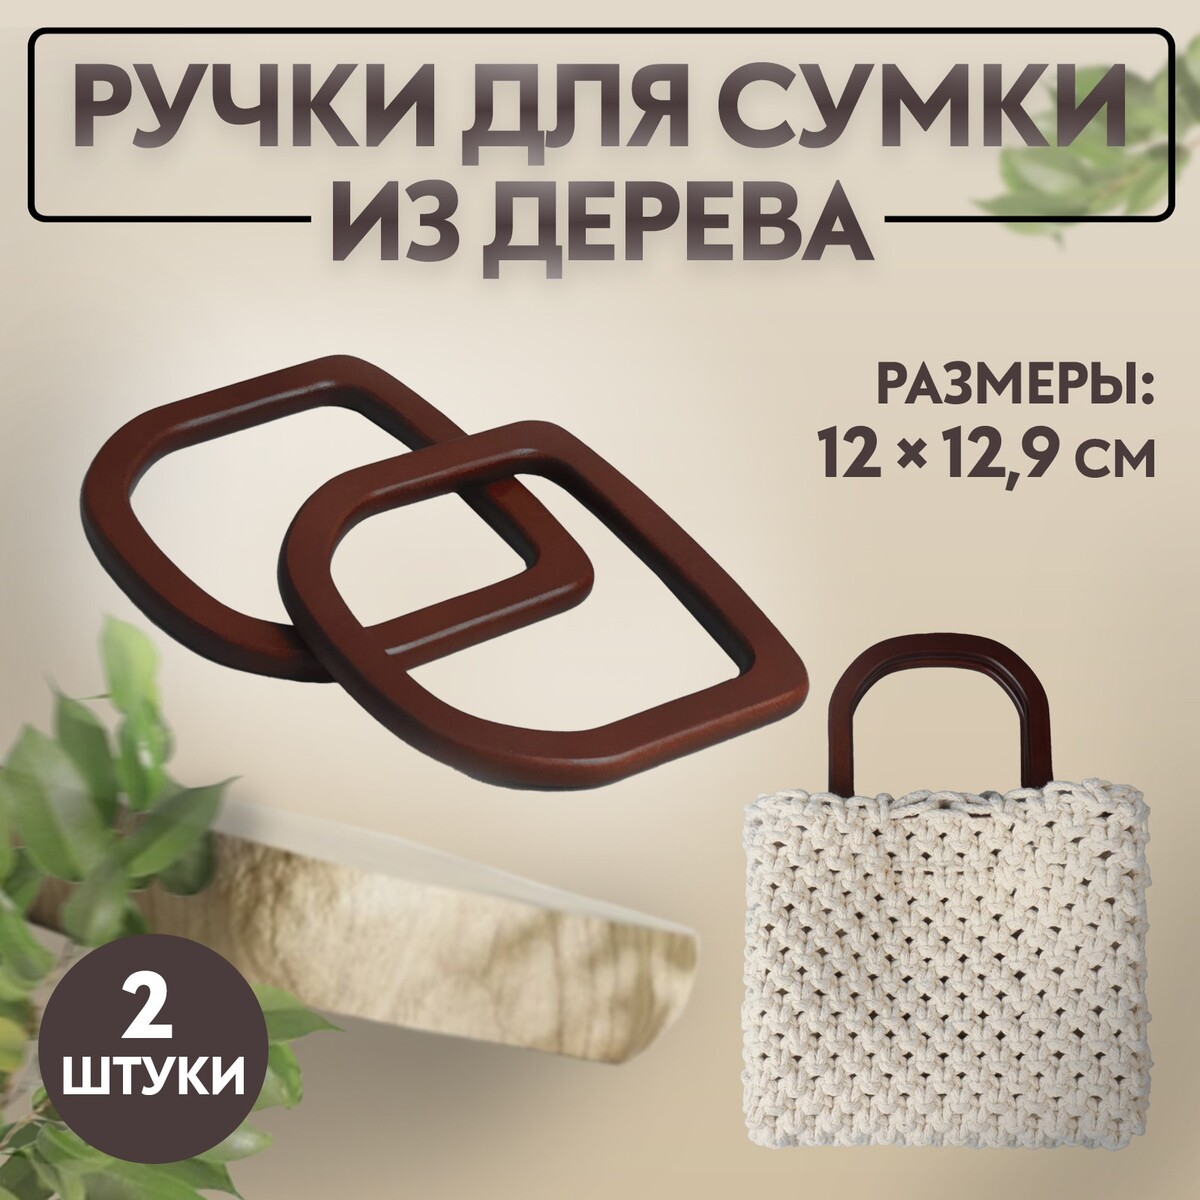 Ручки для сумки деревянные, 12 × 12,9 см, 2 шт, цвет коричневый ручки для сумки деревянные d 18 × 14 5 9 × 10 5 см 2 шт коричневый